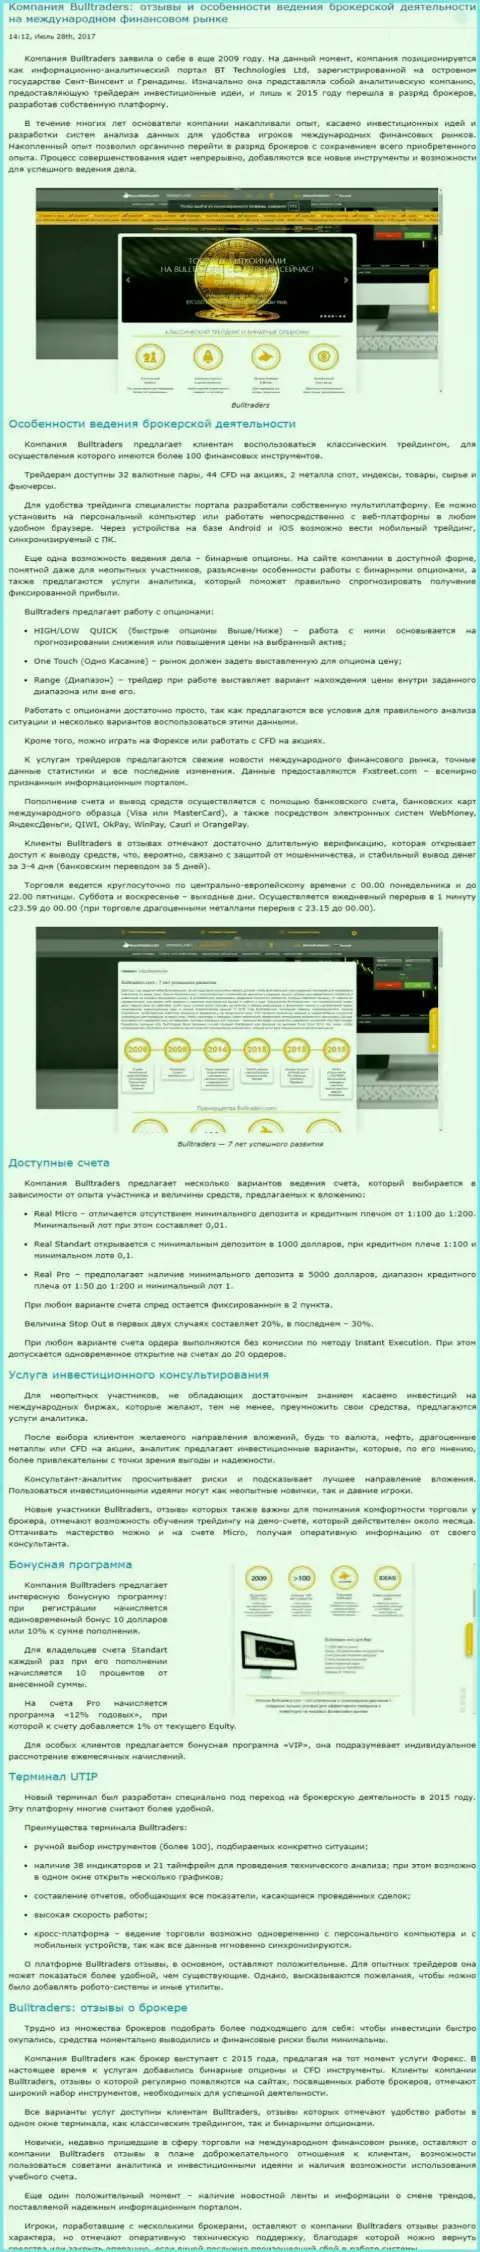 Анализ деятельности форекс компании Булл Трейдерс на внебиржевом рынке валют Форекс на веб-сайте Besuccess Ru